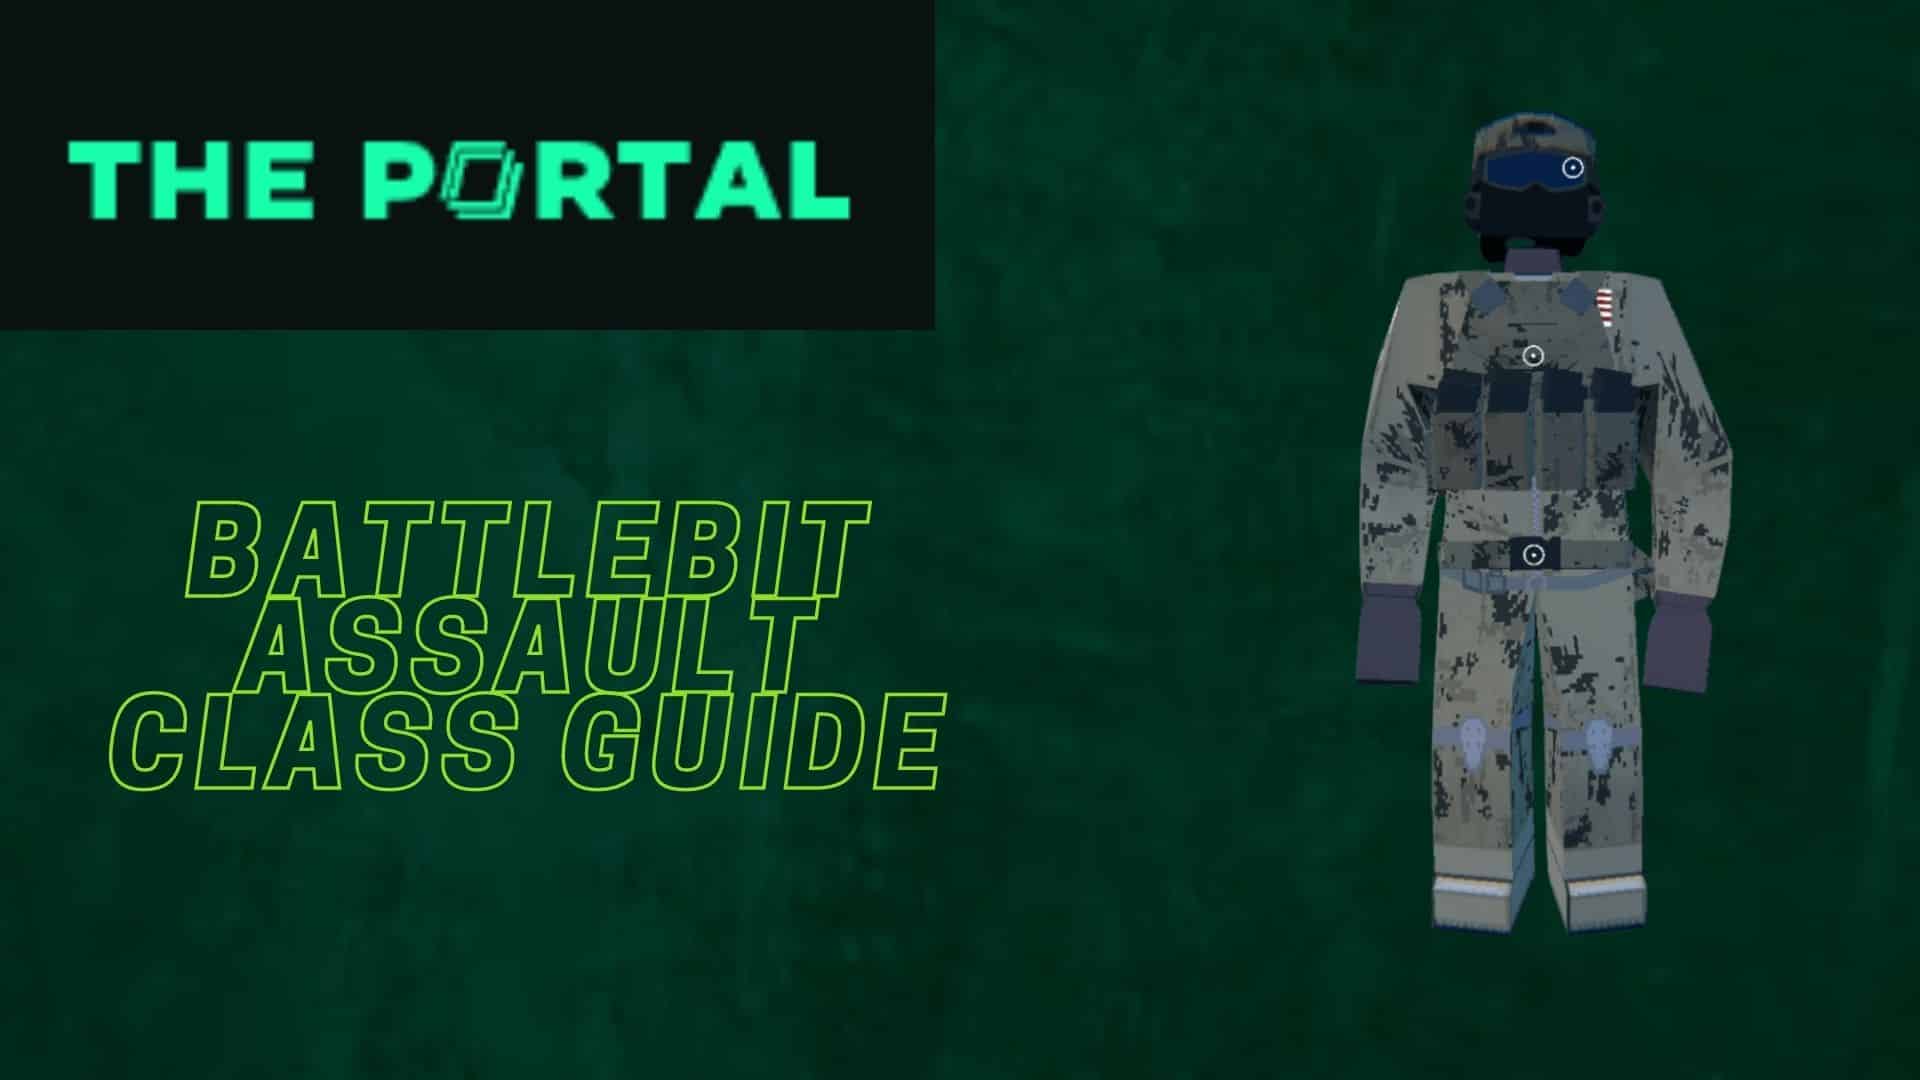 BattleBit Assault Class Guide